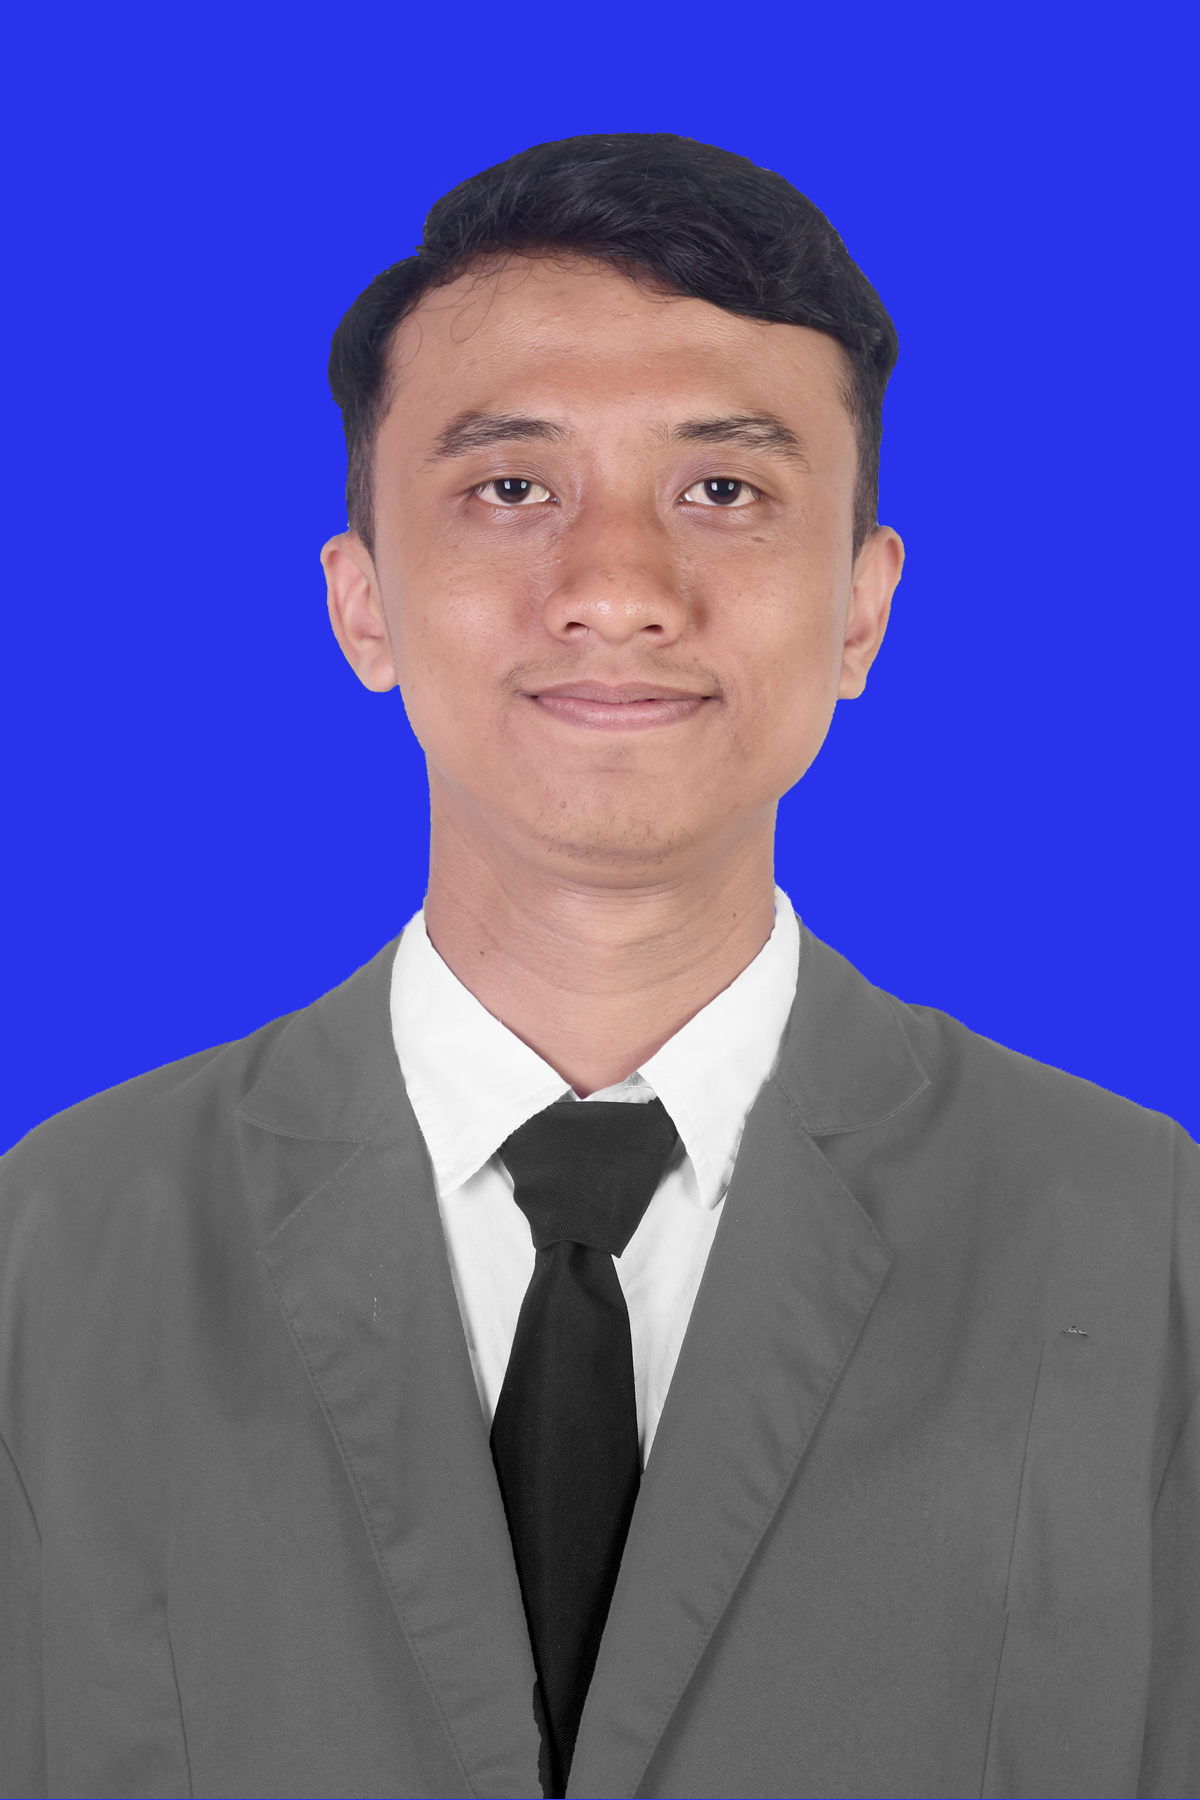 tegarherlambang6 member of BuildWithAngga